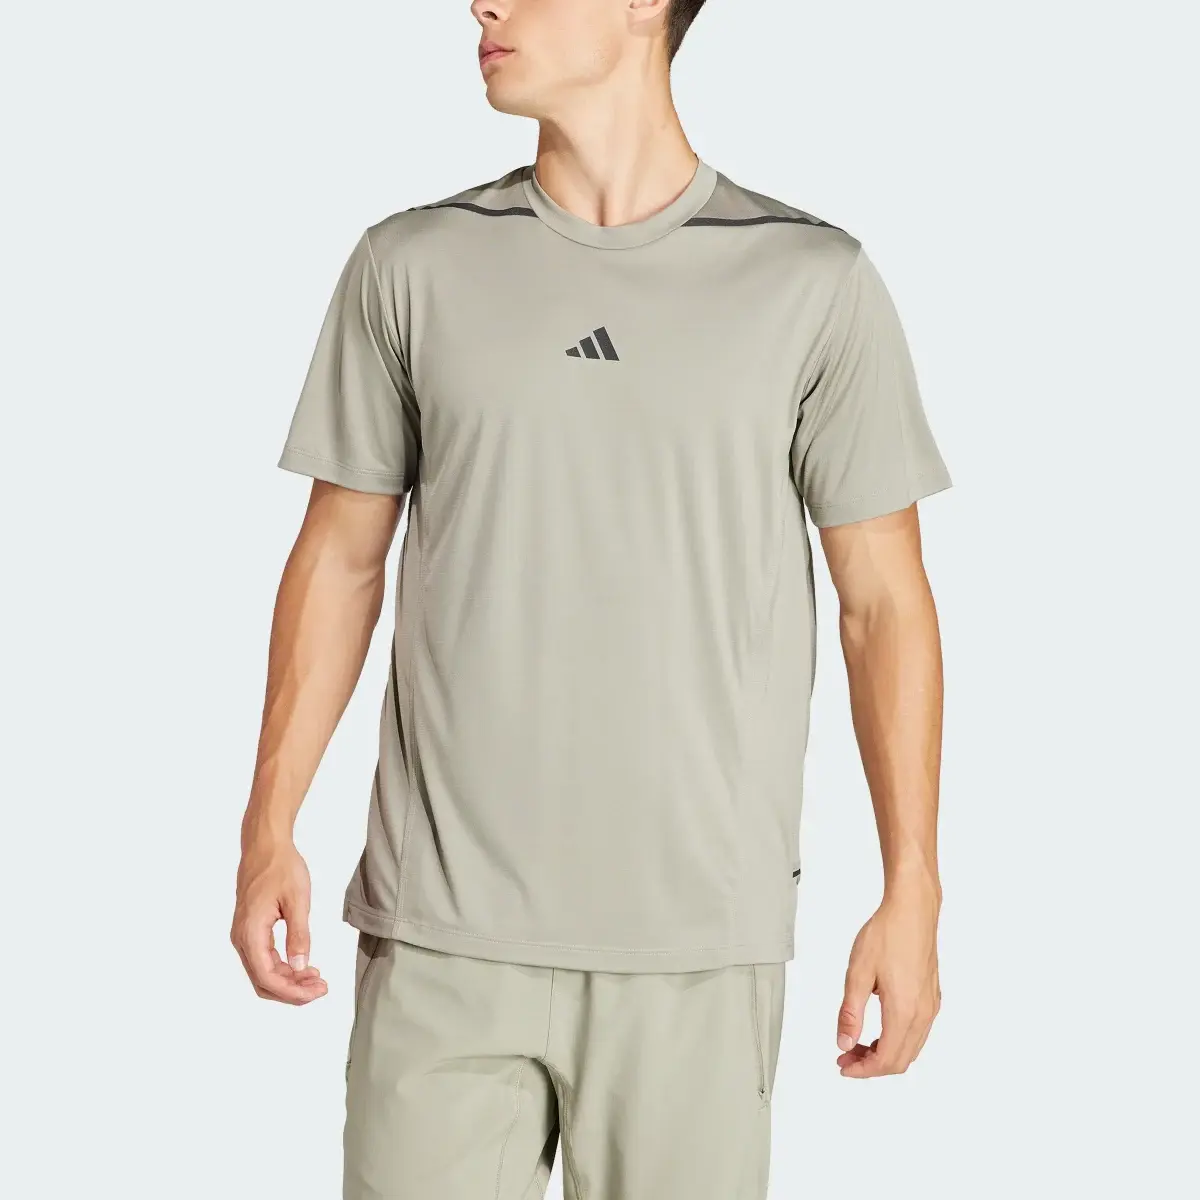 Adidas Camiseta Designed for Training Adistrong Workout. 1